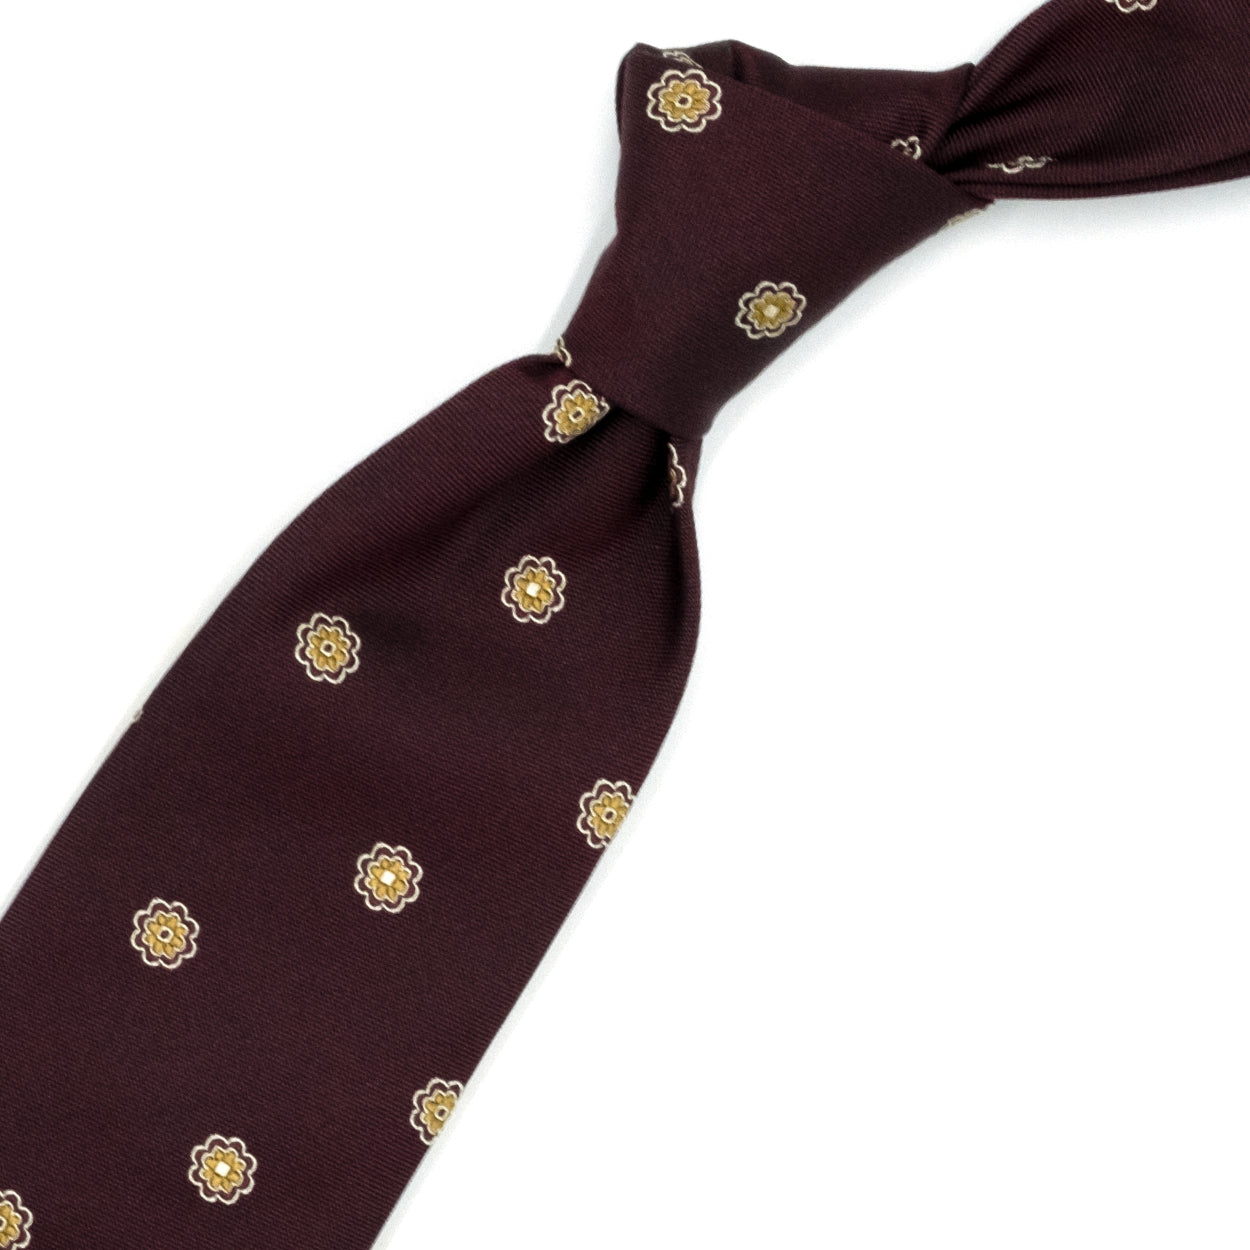 Cravatta bordeaux con fiori senape